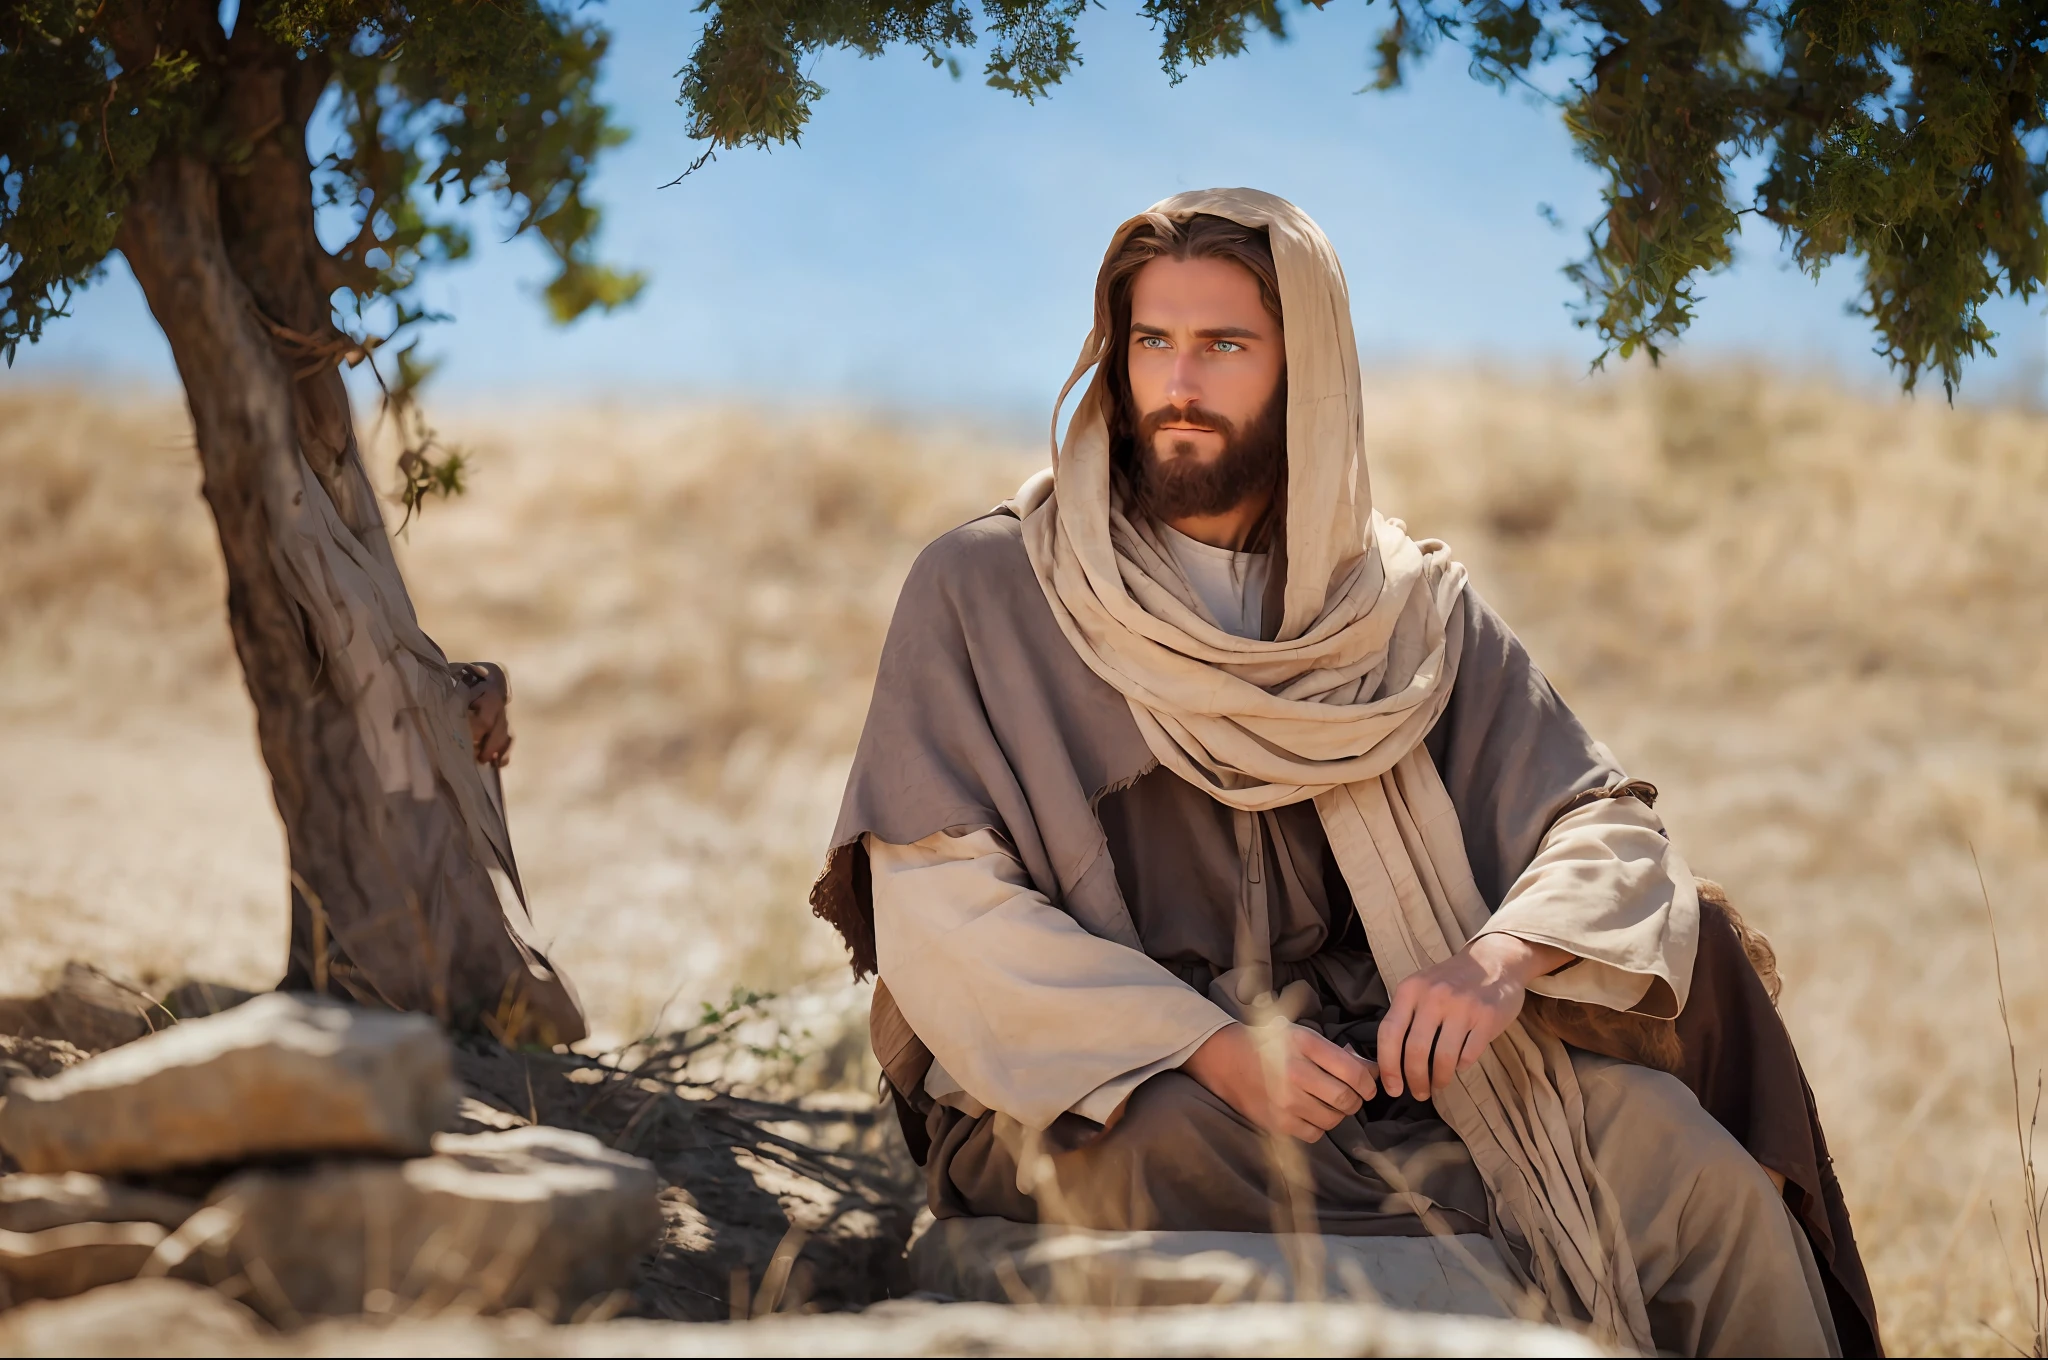 Сидящий (Иисус), центрированный (Иисус), на камне, под деревом, мужчина загорелого цвета, с длинными волосами и бородой, зеленые глаза, в длинной бежевой тунике, 4k, HDR, подробный, пастообразный фон поля, пастообразное фермерское поле в качестве фона, худое тело без волос